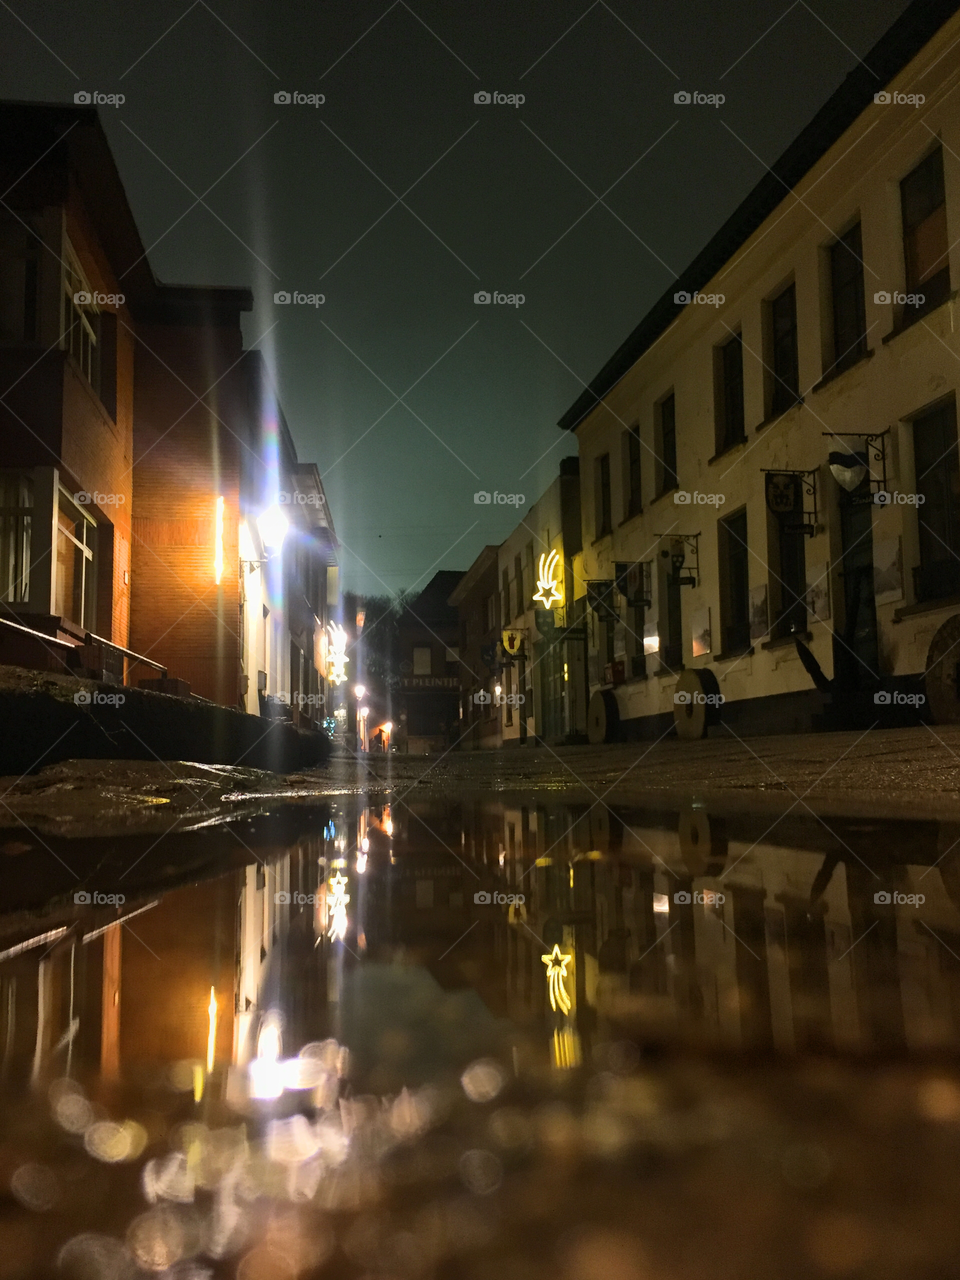 City reflections at night